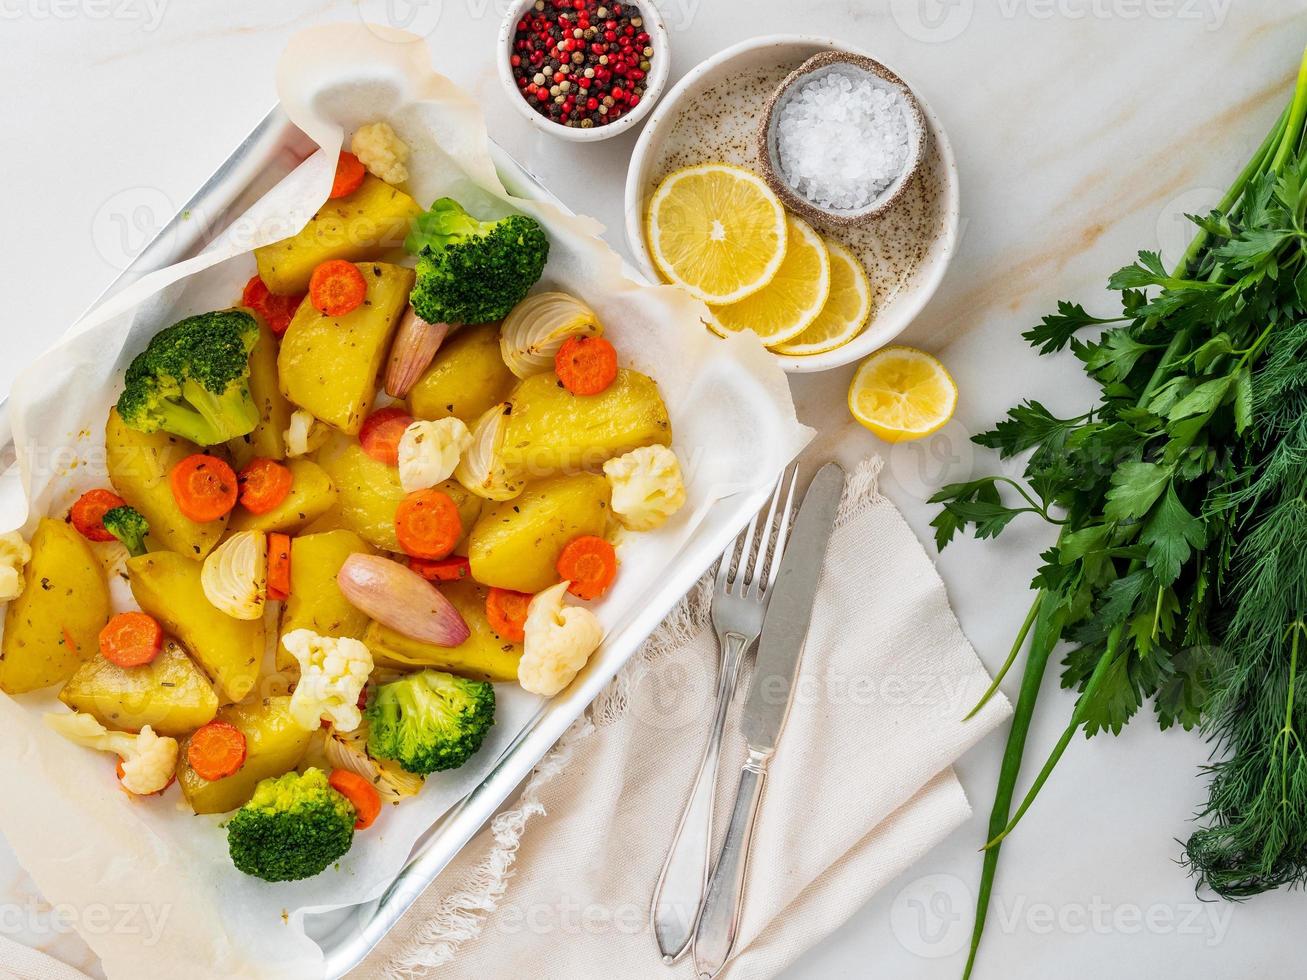 geroosterde groenten op dienblad met perkament op marmeren tafel. aardappelen, wortelen, foto